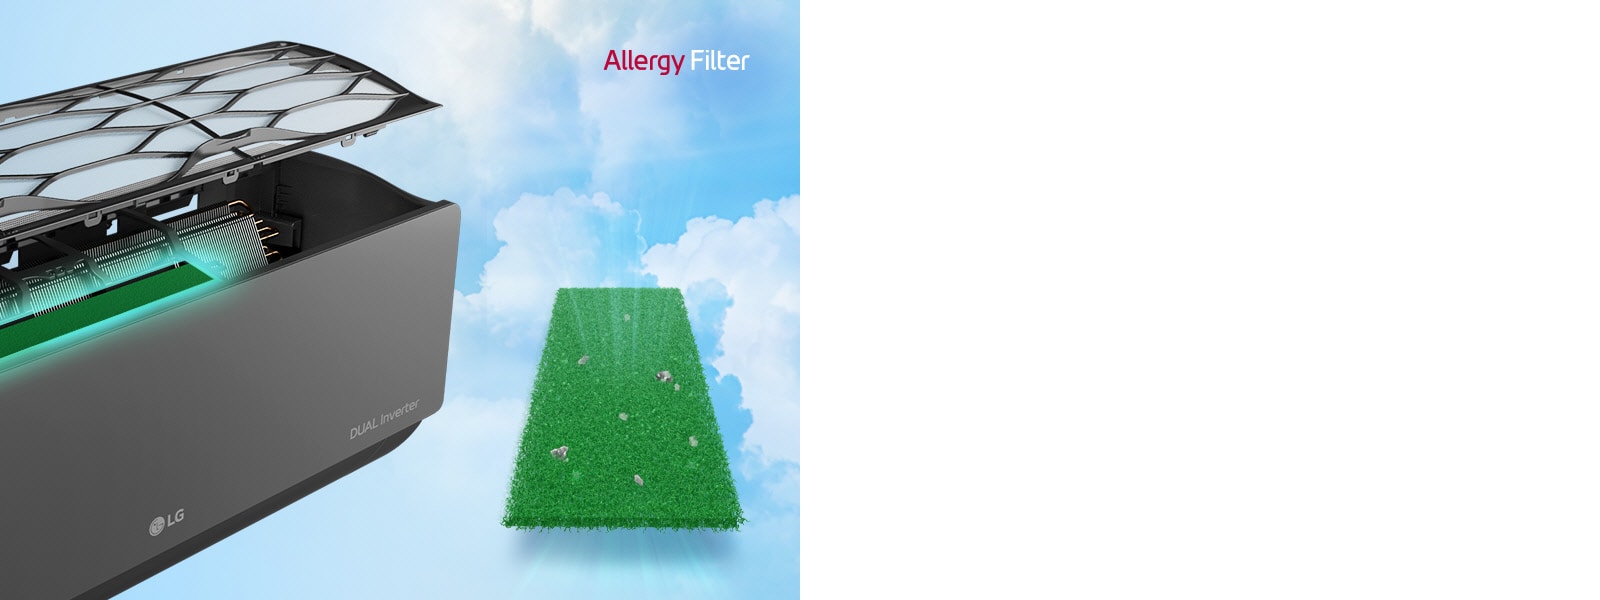 A klímeberendezés oldalról látható, ahol a felnyitott szűrő alatt láthatjuk a belsejében lévő allergiaszűrőt. A berendezés mellett zölden láthatjuk magát az allergiaszűrőt, amelyen a befogott részecskék vannak szemléltetve. Az allergiaszűrő logója a gép jobb felső sarkán található.